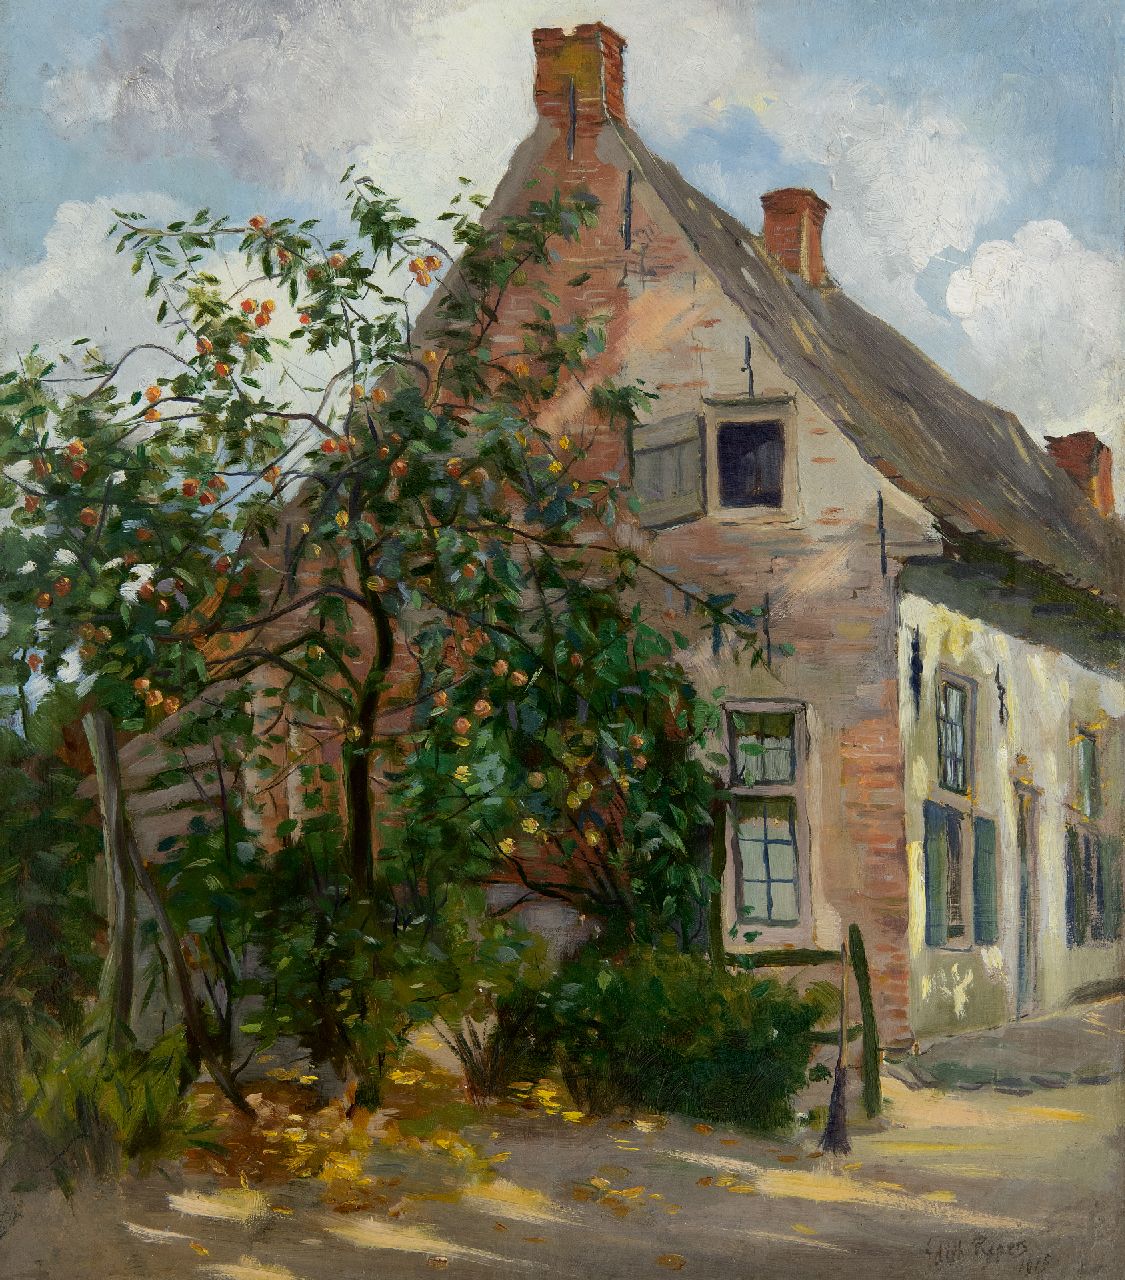 Pijpers E.E.  | 'Edith' Elizabeth Pijpers | Schilderijen te koop aangeboden | Huis met appelboom, olieverf op doek 45,2 x 40,4 cm, gesigneerd rechtsonder en gedateerd 1915